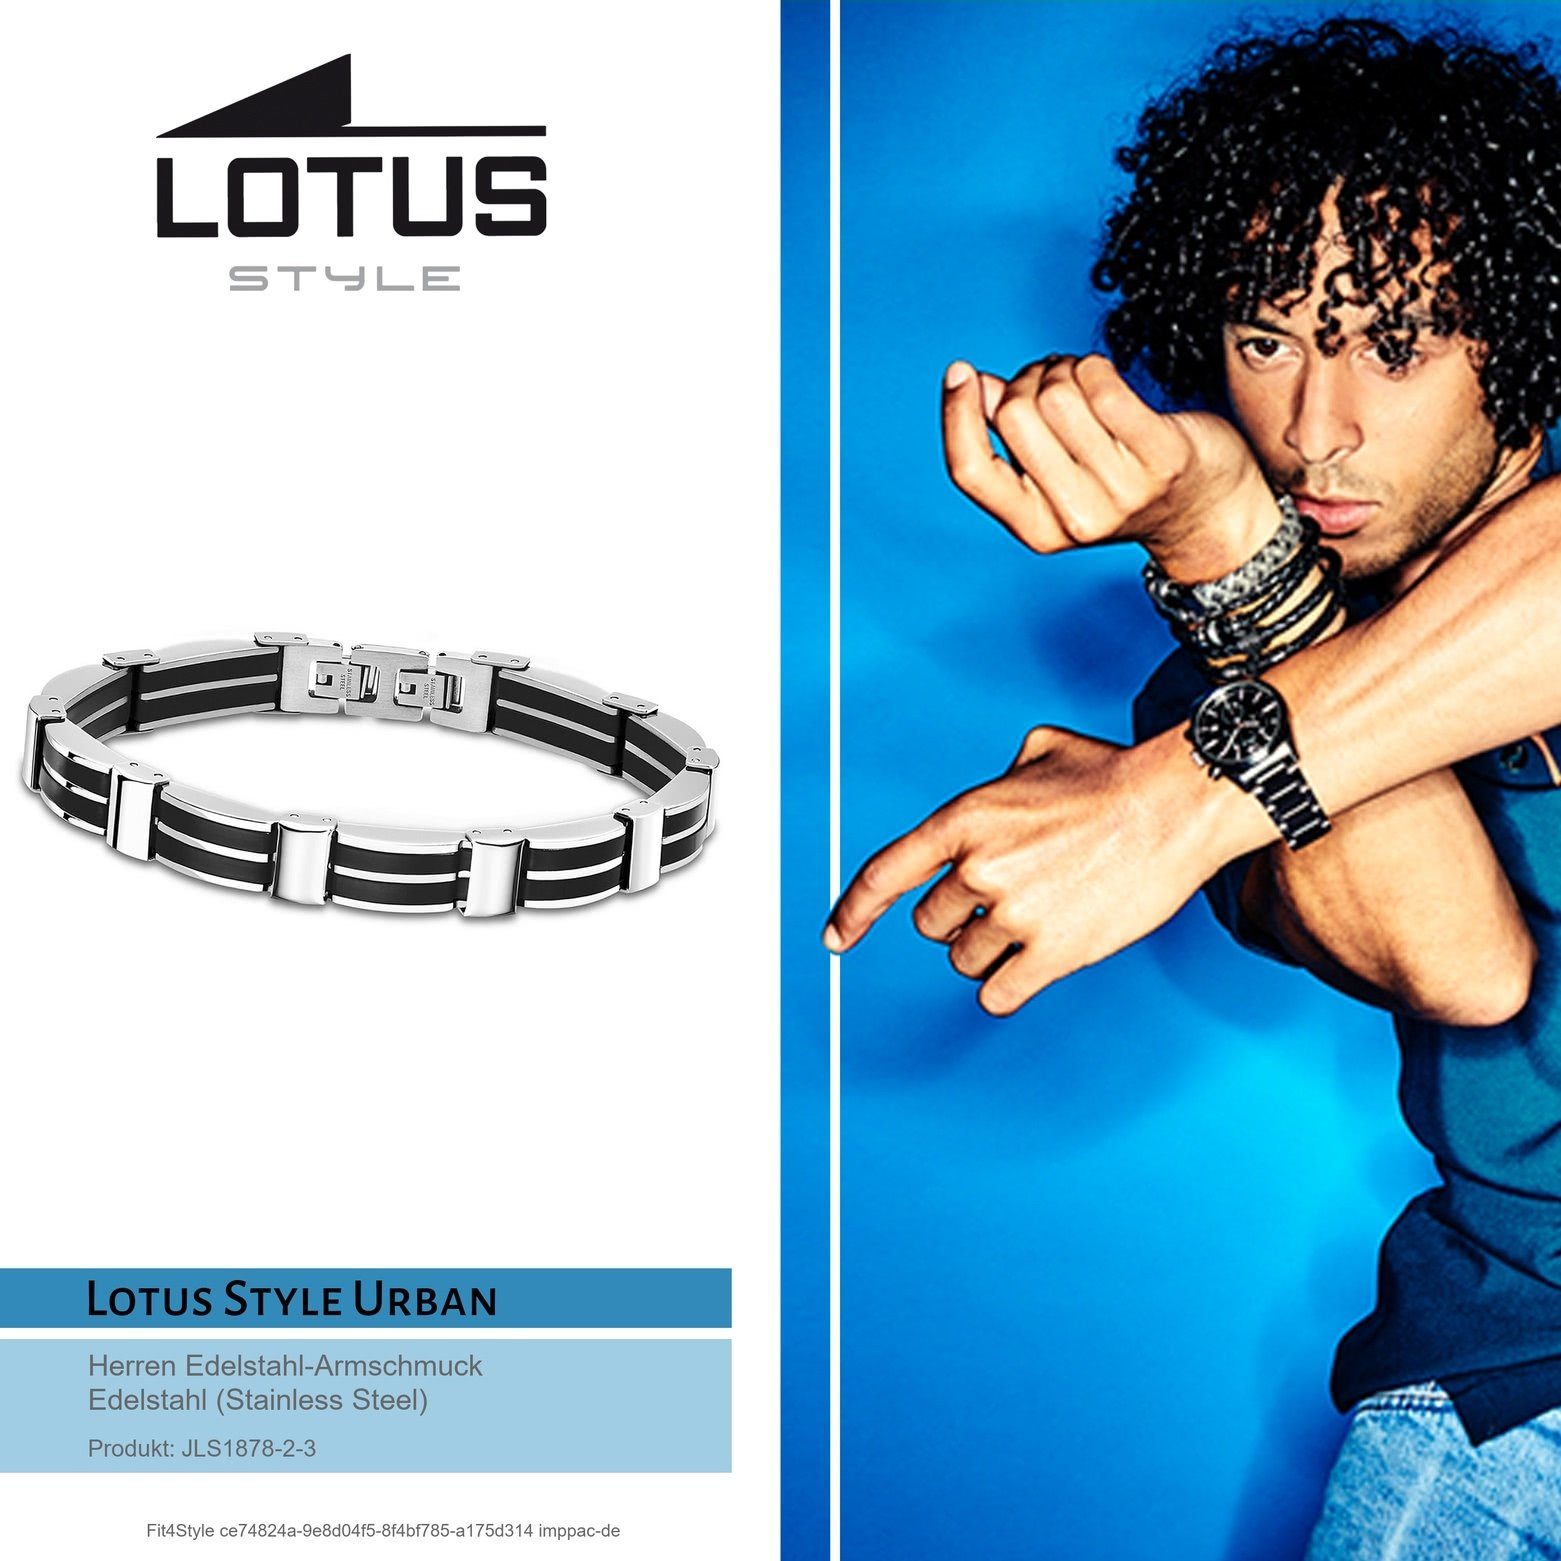 (Armband), Steel) LS1878-2/3 für Lotus (Stainless Edelstahl Style Armband Lotus Edelstahlarmband Armbänder Style Herren schwarz